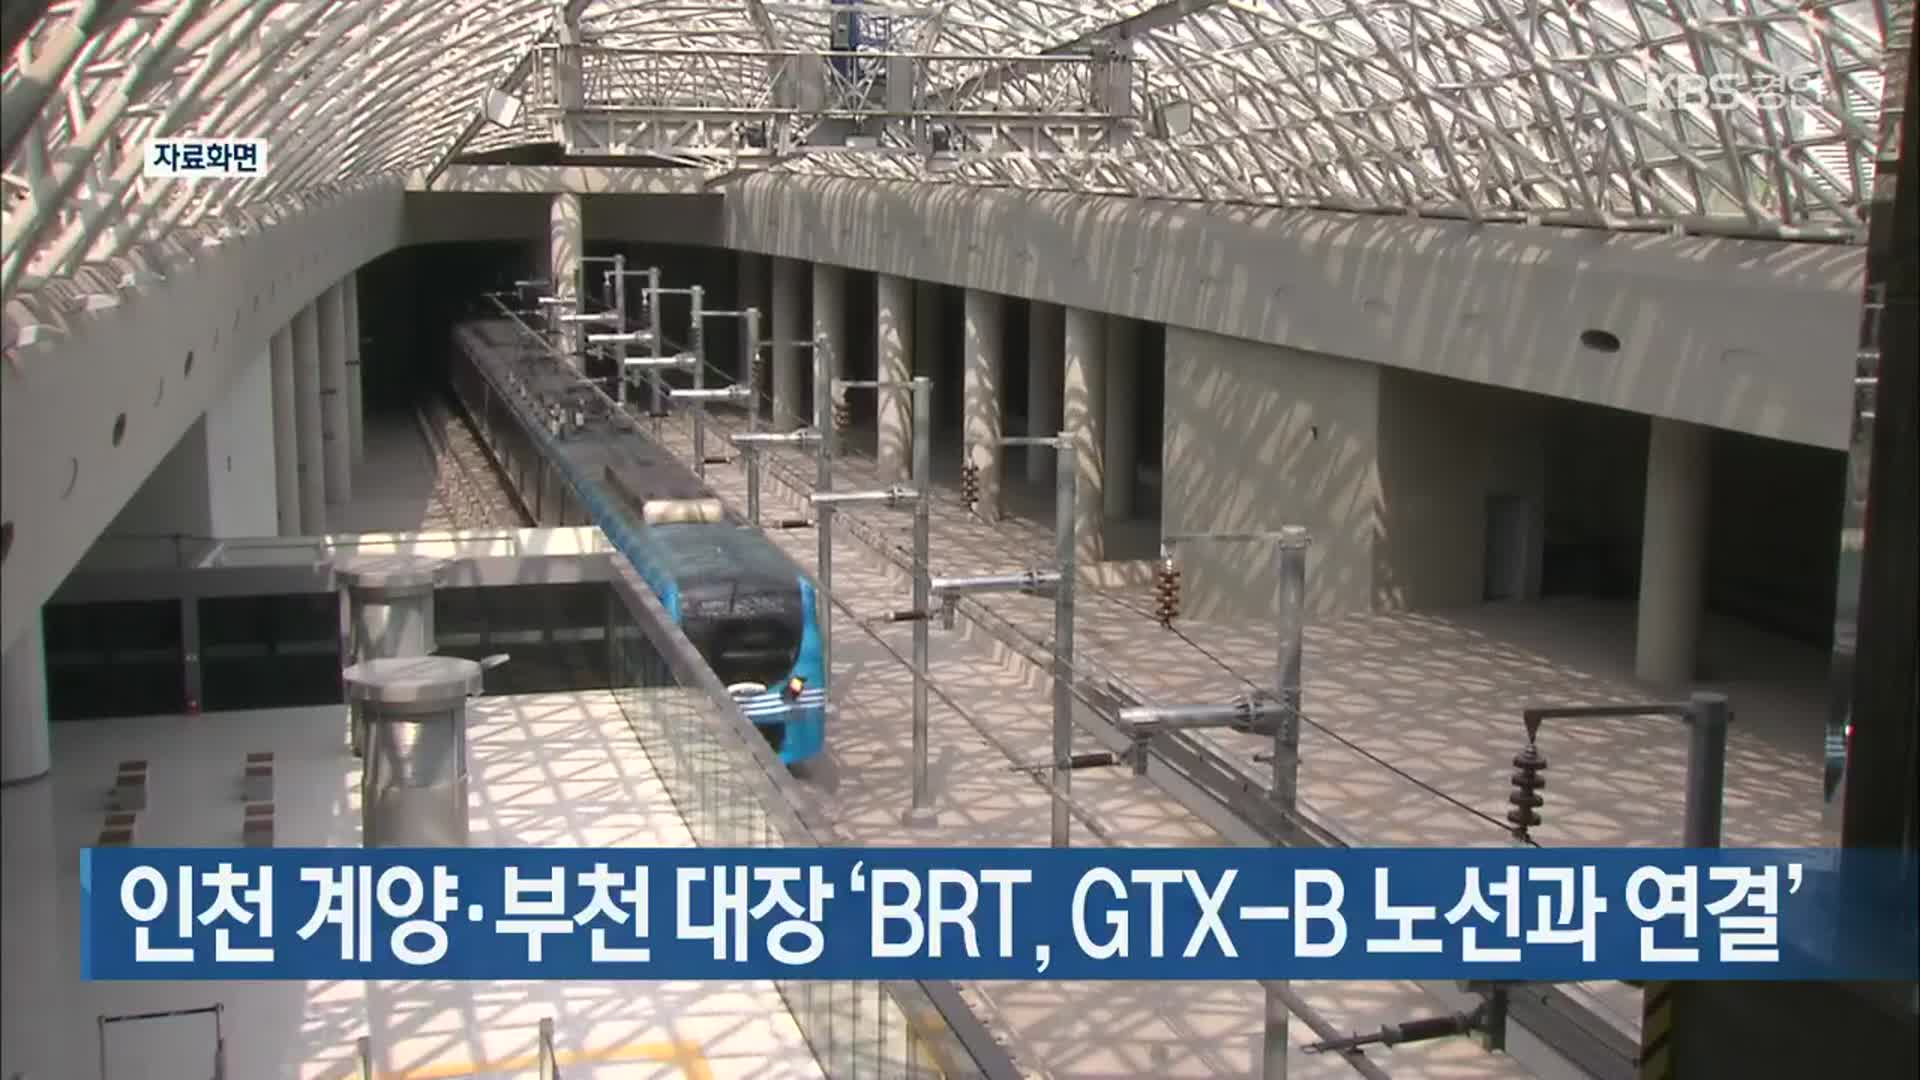 인천 계양·부천 대장 ‘BRT, GTX-B 노선과 연결’